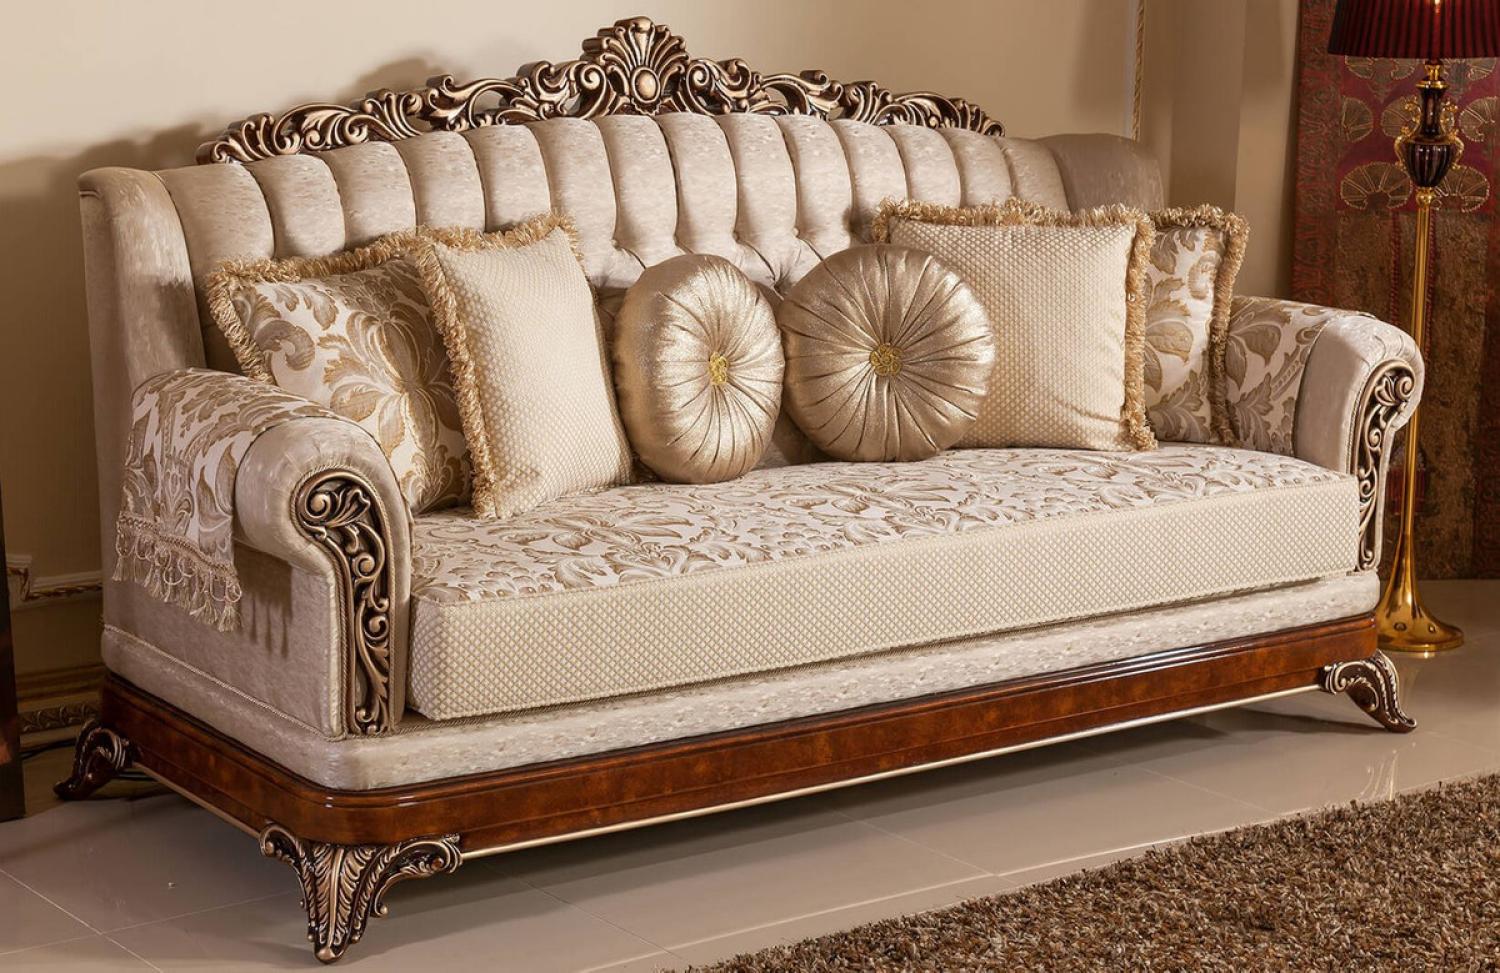 Casa Padrino Luxus Barock Sofa Gold / Braun / Bronzefarben - Prunkvolles Wohnzimmer Sofa mit elegantem Muster - Barock Wohnzimmer & Hotel Möbel - Edel & Prunkvoll Bild 1